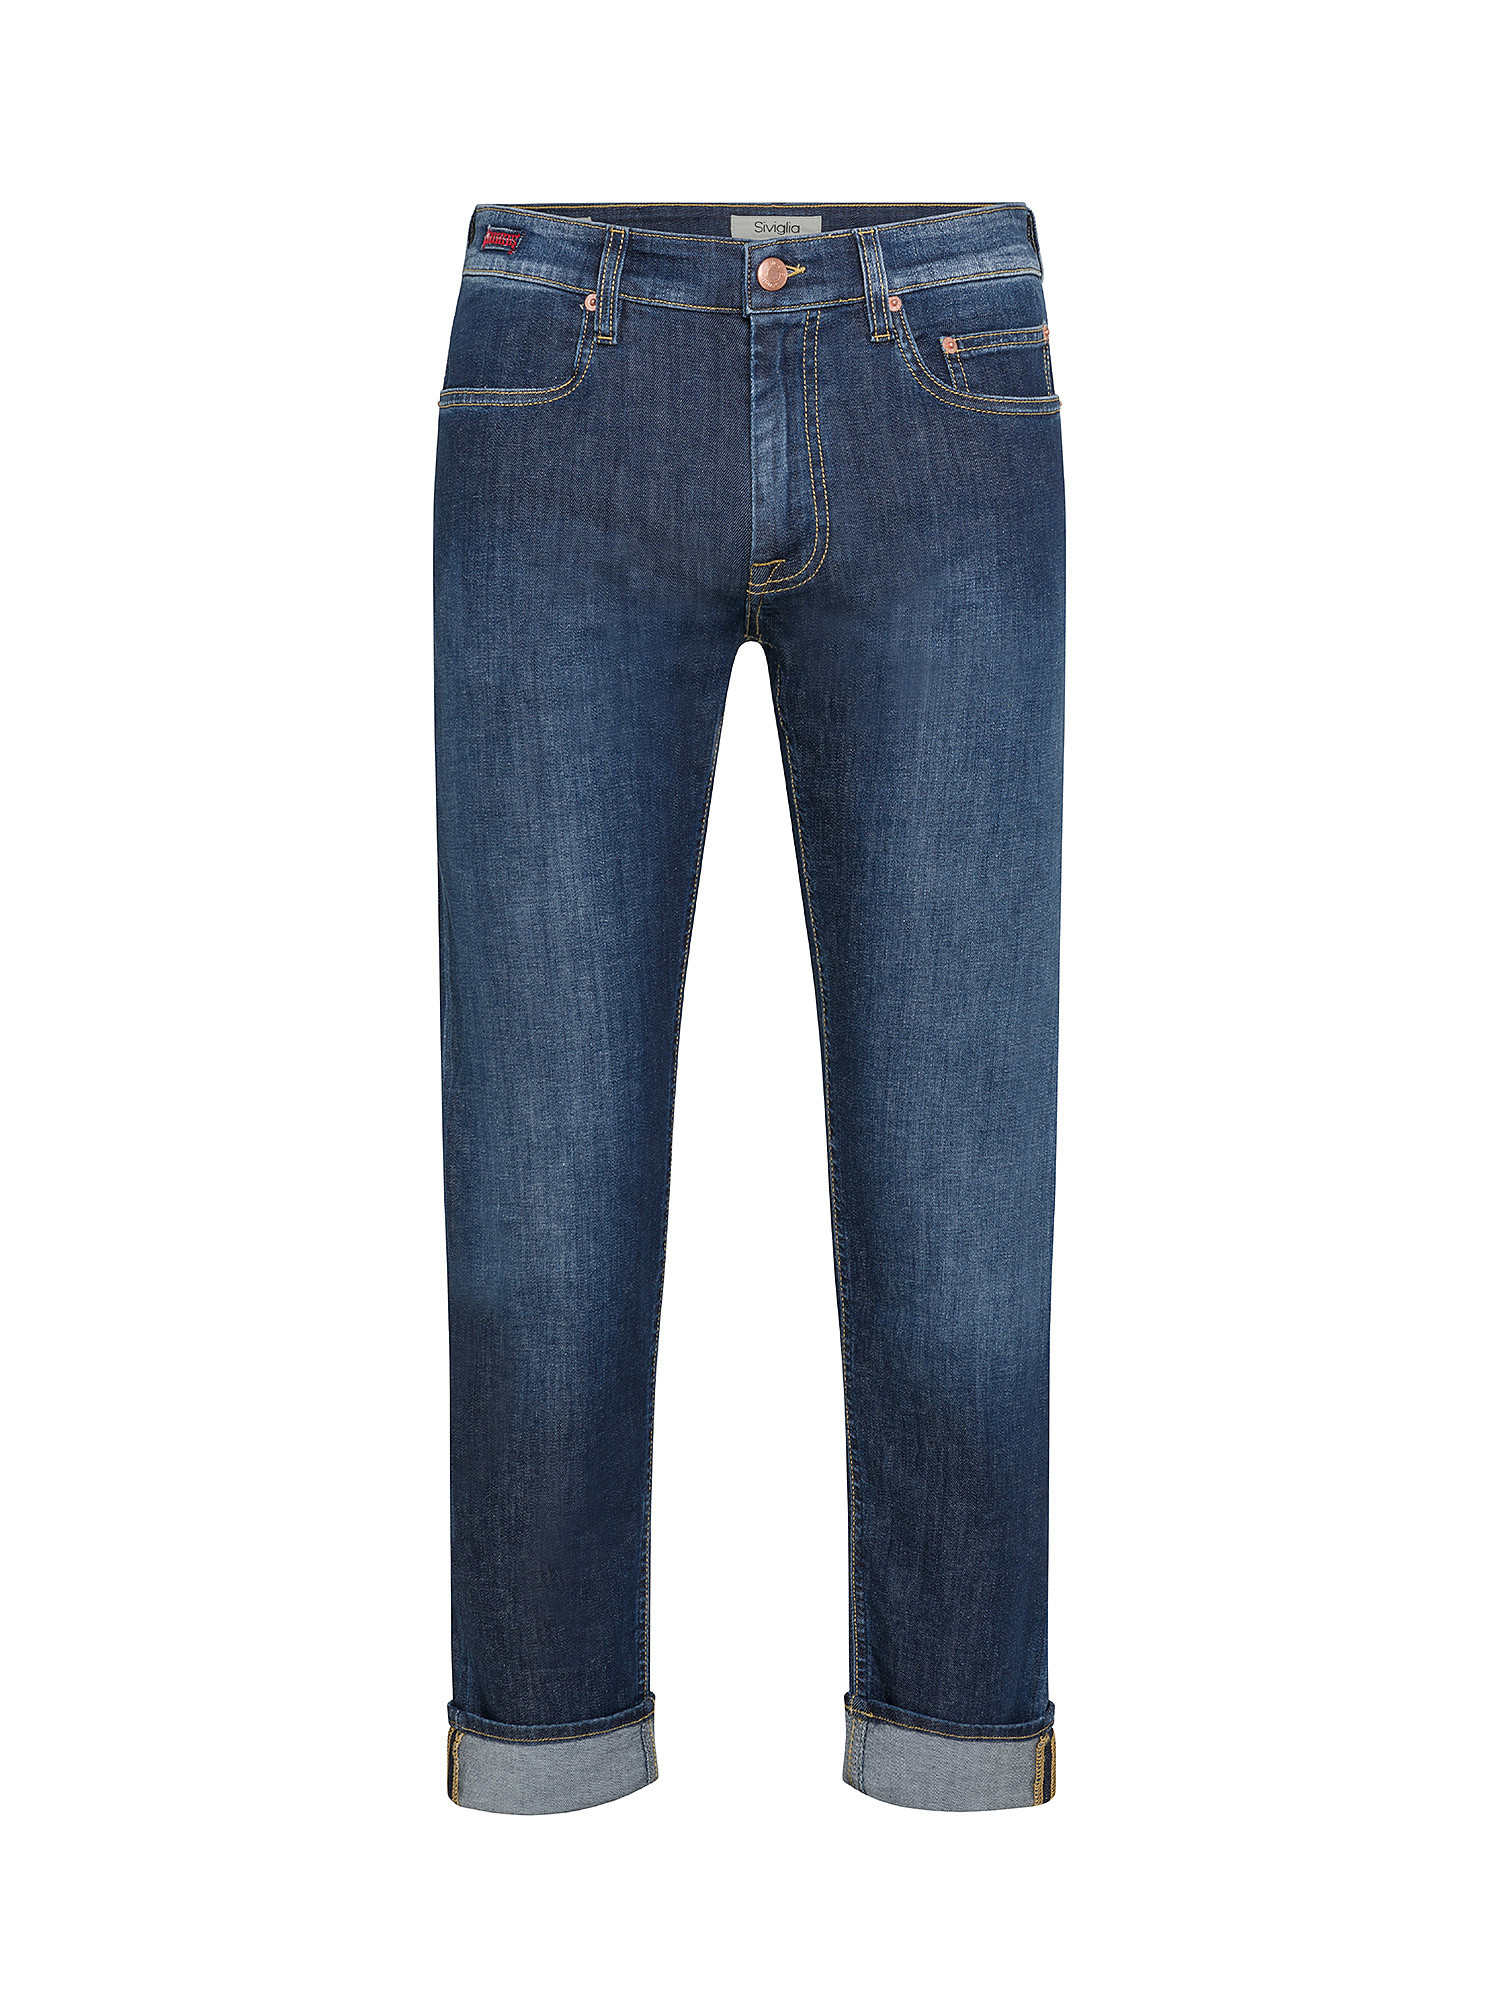 Siviglia - Jeans cinque tasche, Denim, large image number 0